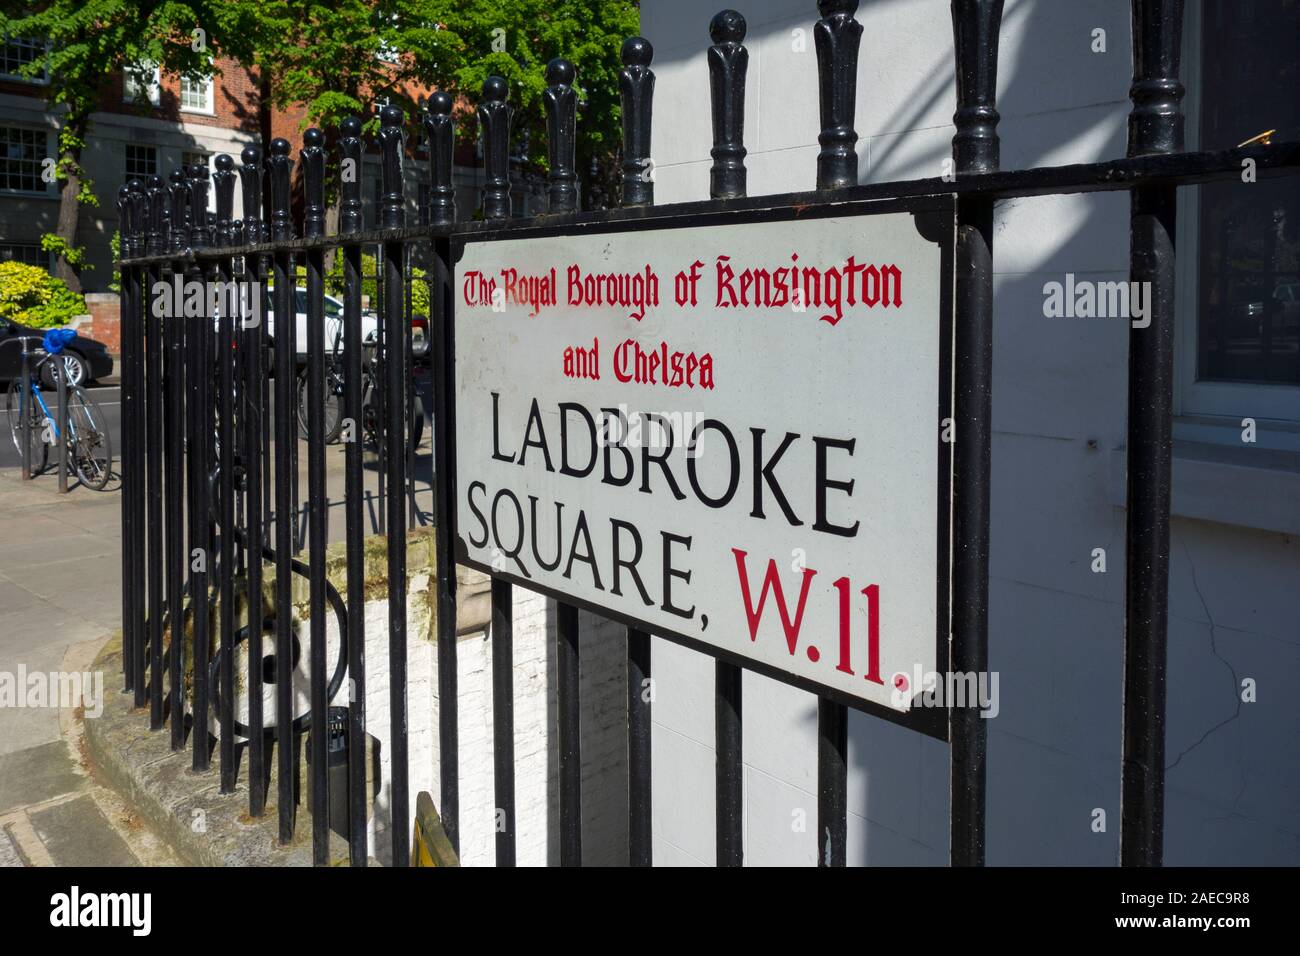 Ladbroke Square road name sign, Royal Borough of Kensington and Chelsea, London, UK Stock Photo